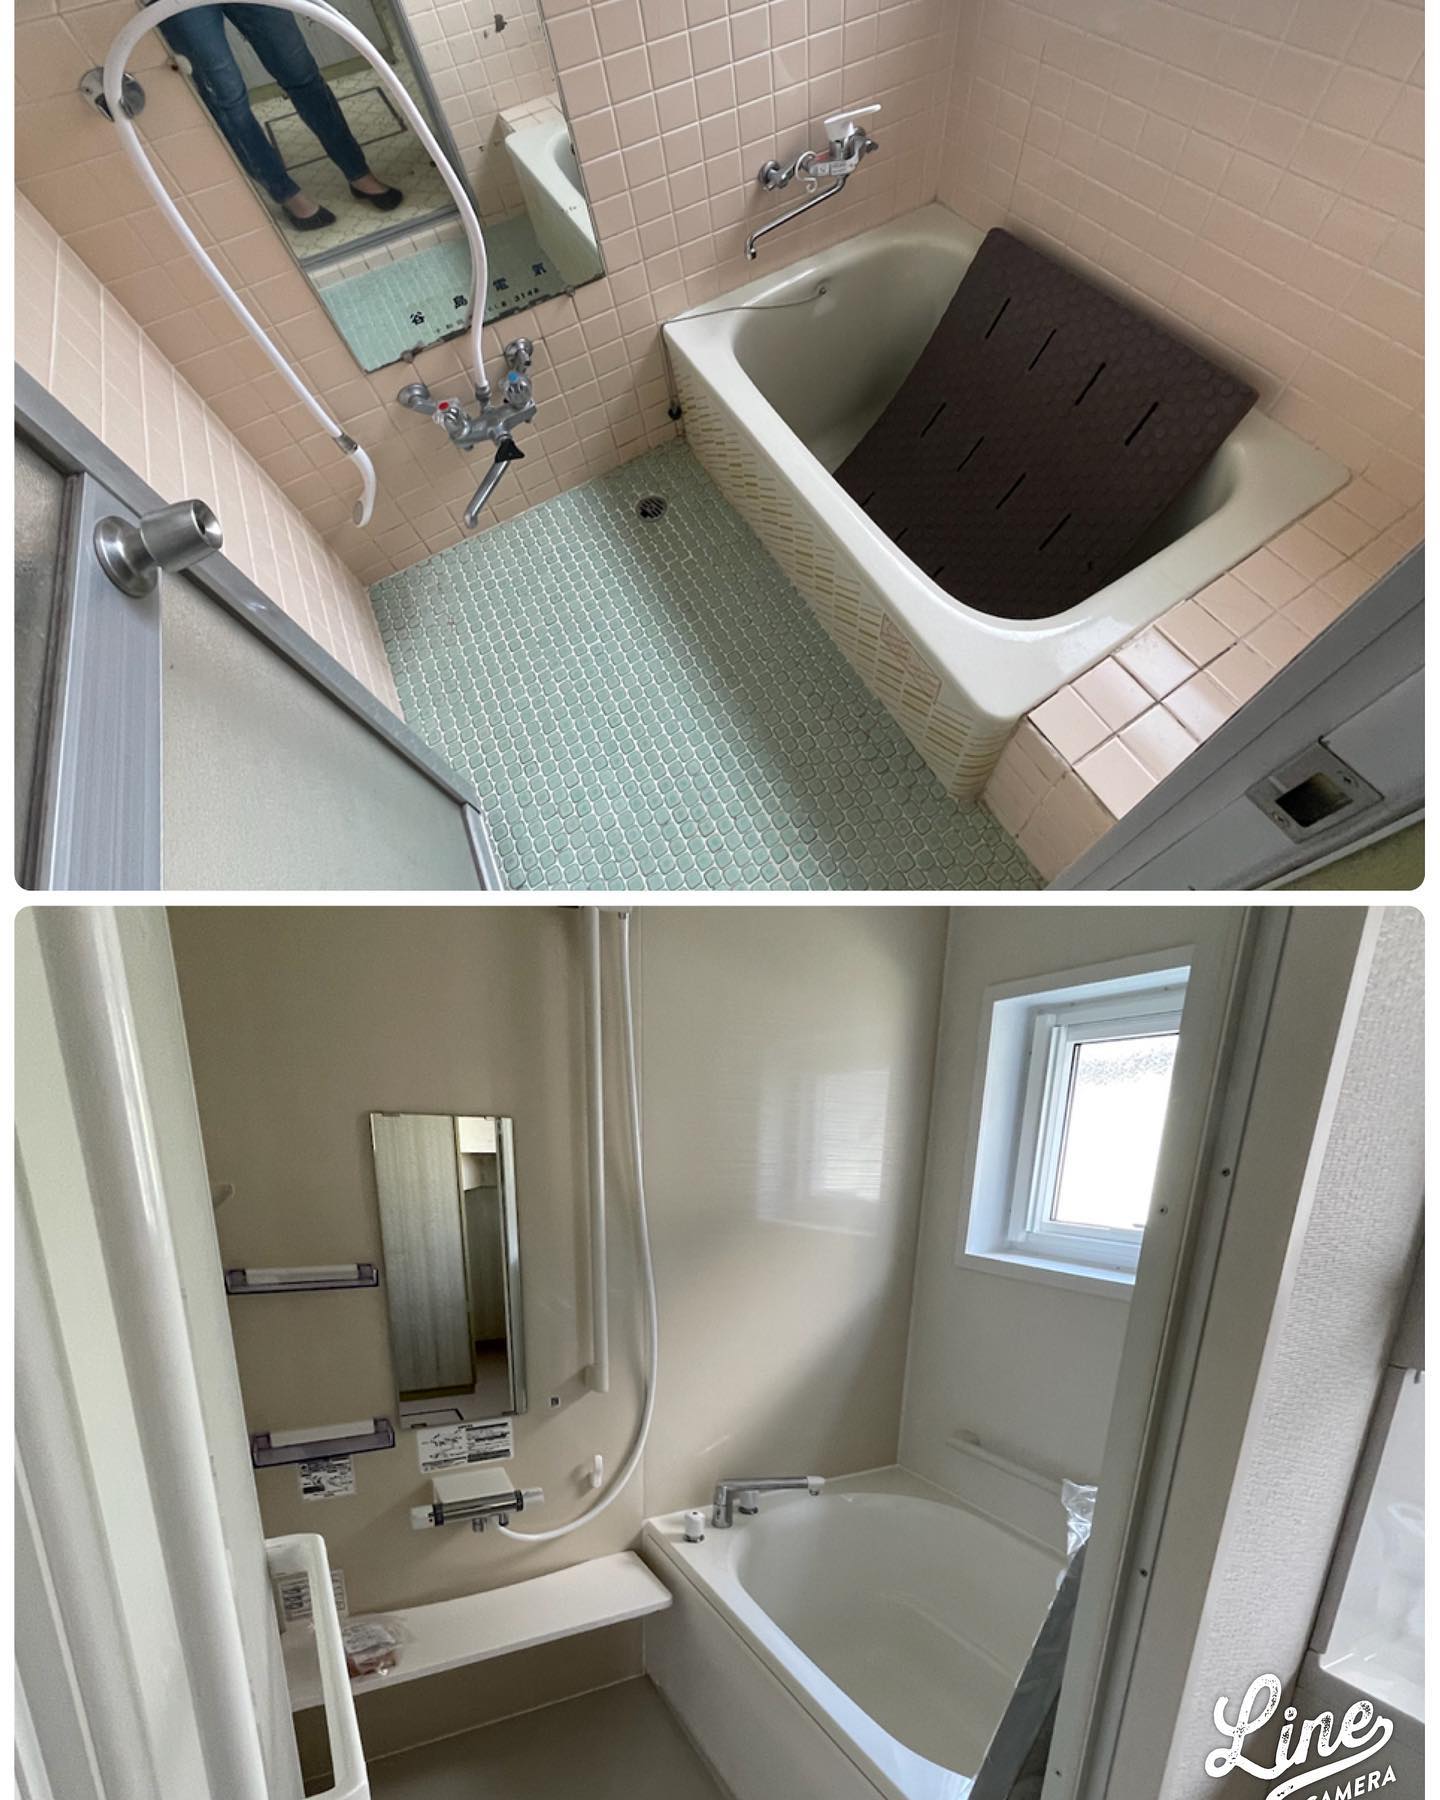 トークホームのリフォーム‍♀️今回は、浴室のリフォームです！タイルのお風呂からユニットバスへユニットバスにする事により、断熱効果が上がります！お客様にも喜んでいただきました。#トークホーム #新築 #新築一戸建て #八戸 #平屋 #リフォーム #リノベーション #浴室 #ユニットバス #中古住宅 #DIY - from Instagram